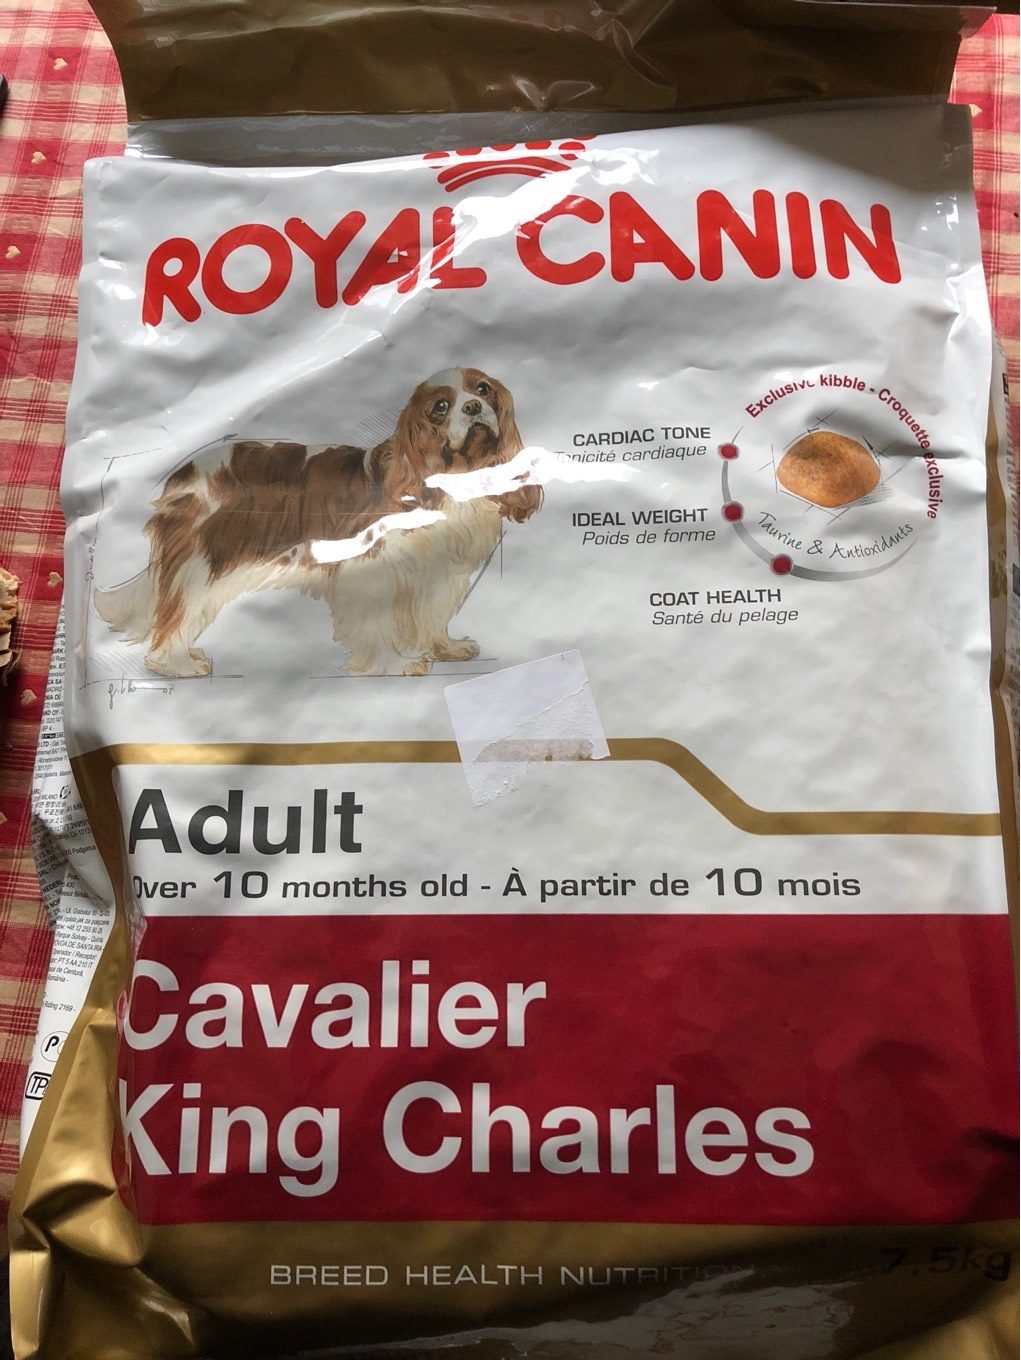 Royal Canin - Croquettes Cavalier King Charles Pour Chien Adulte - 7,5KG - Produit - fr